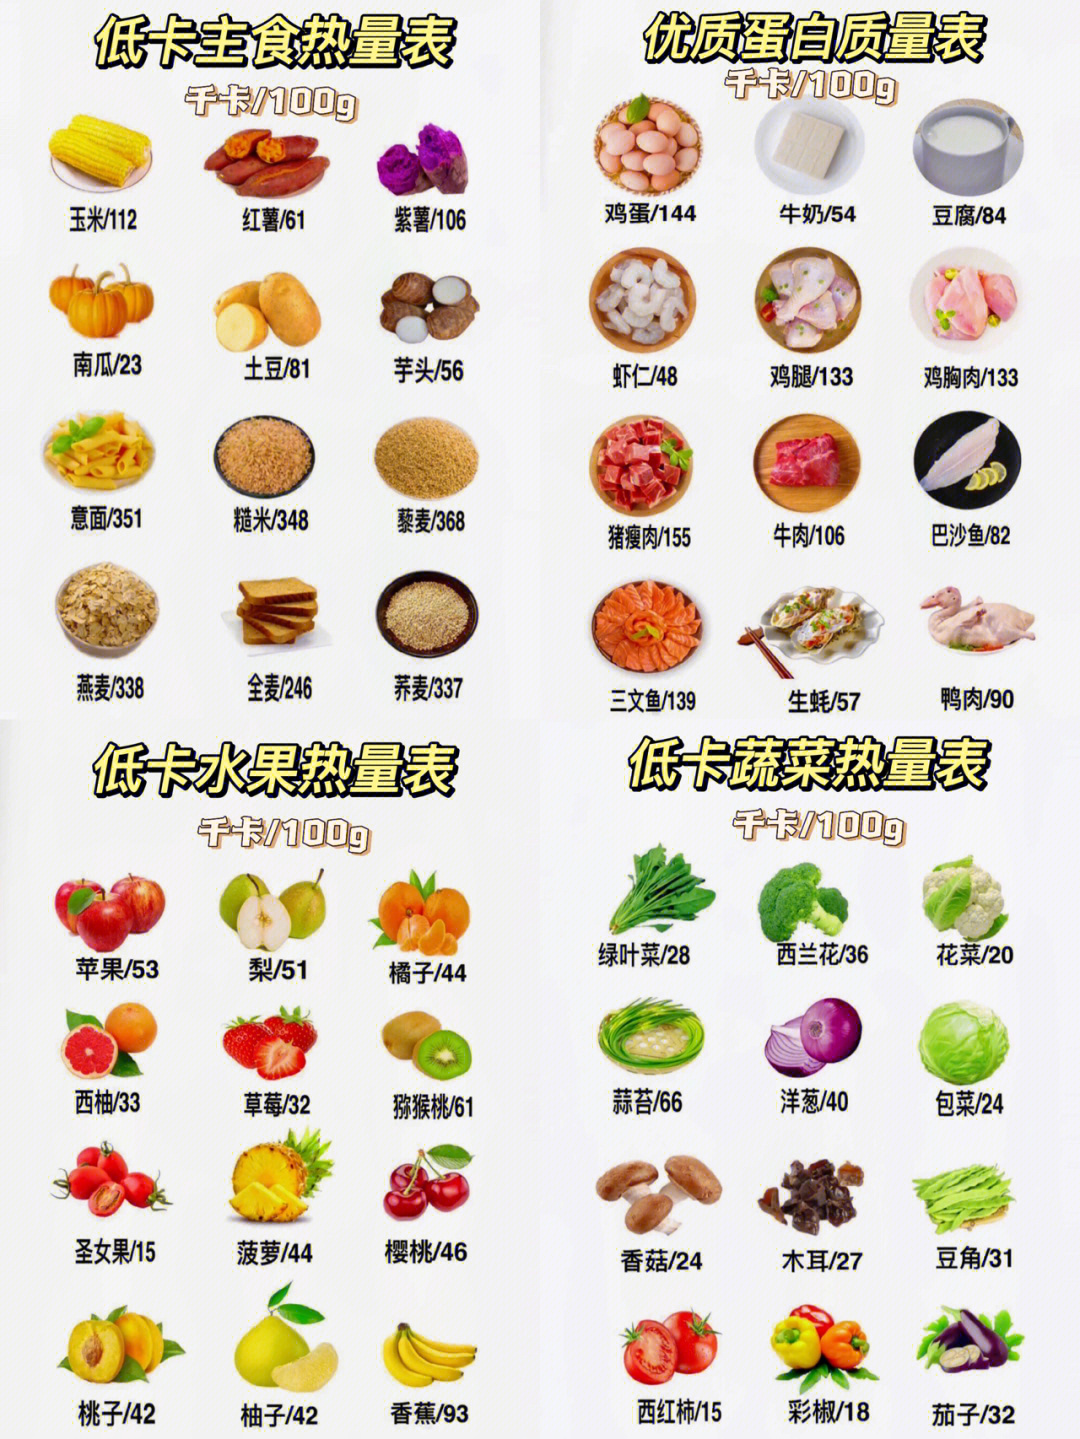 低卡路里食物表图图片